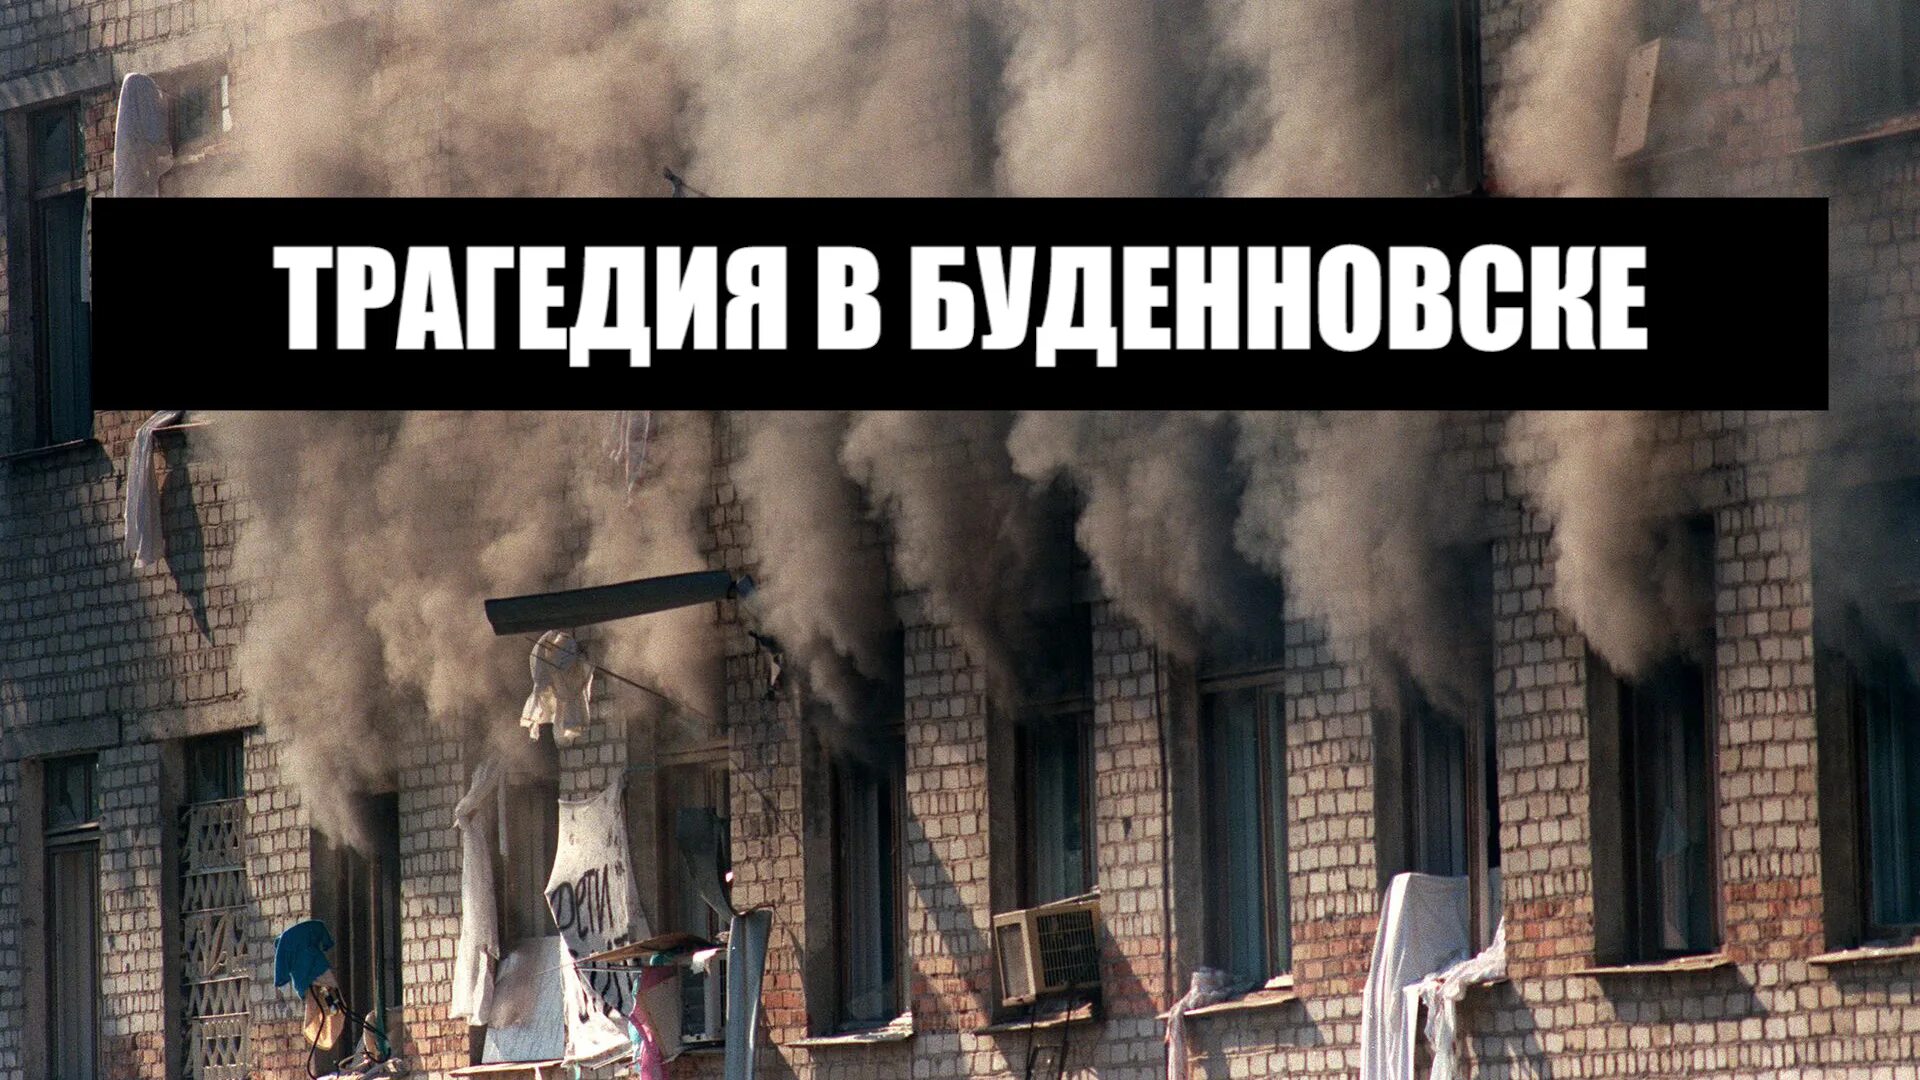 14 Июня 1995 года – Буденновск, захват больницы. Терроризм Буденновск 1995. Буденновск 14 июня 1995 года. Штурм больницы в Буденновске 1995. Захват роддома